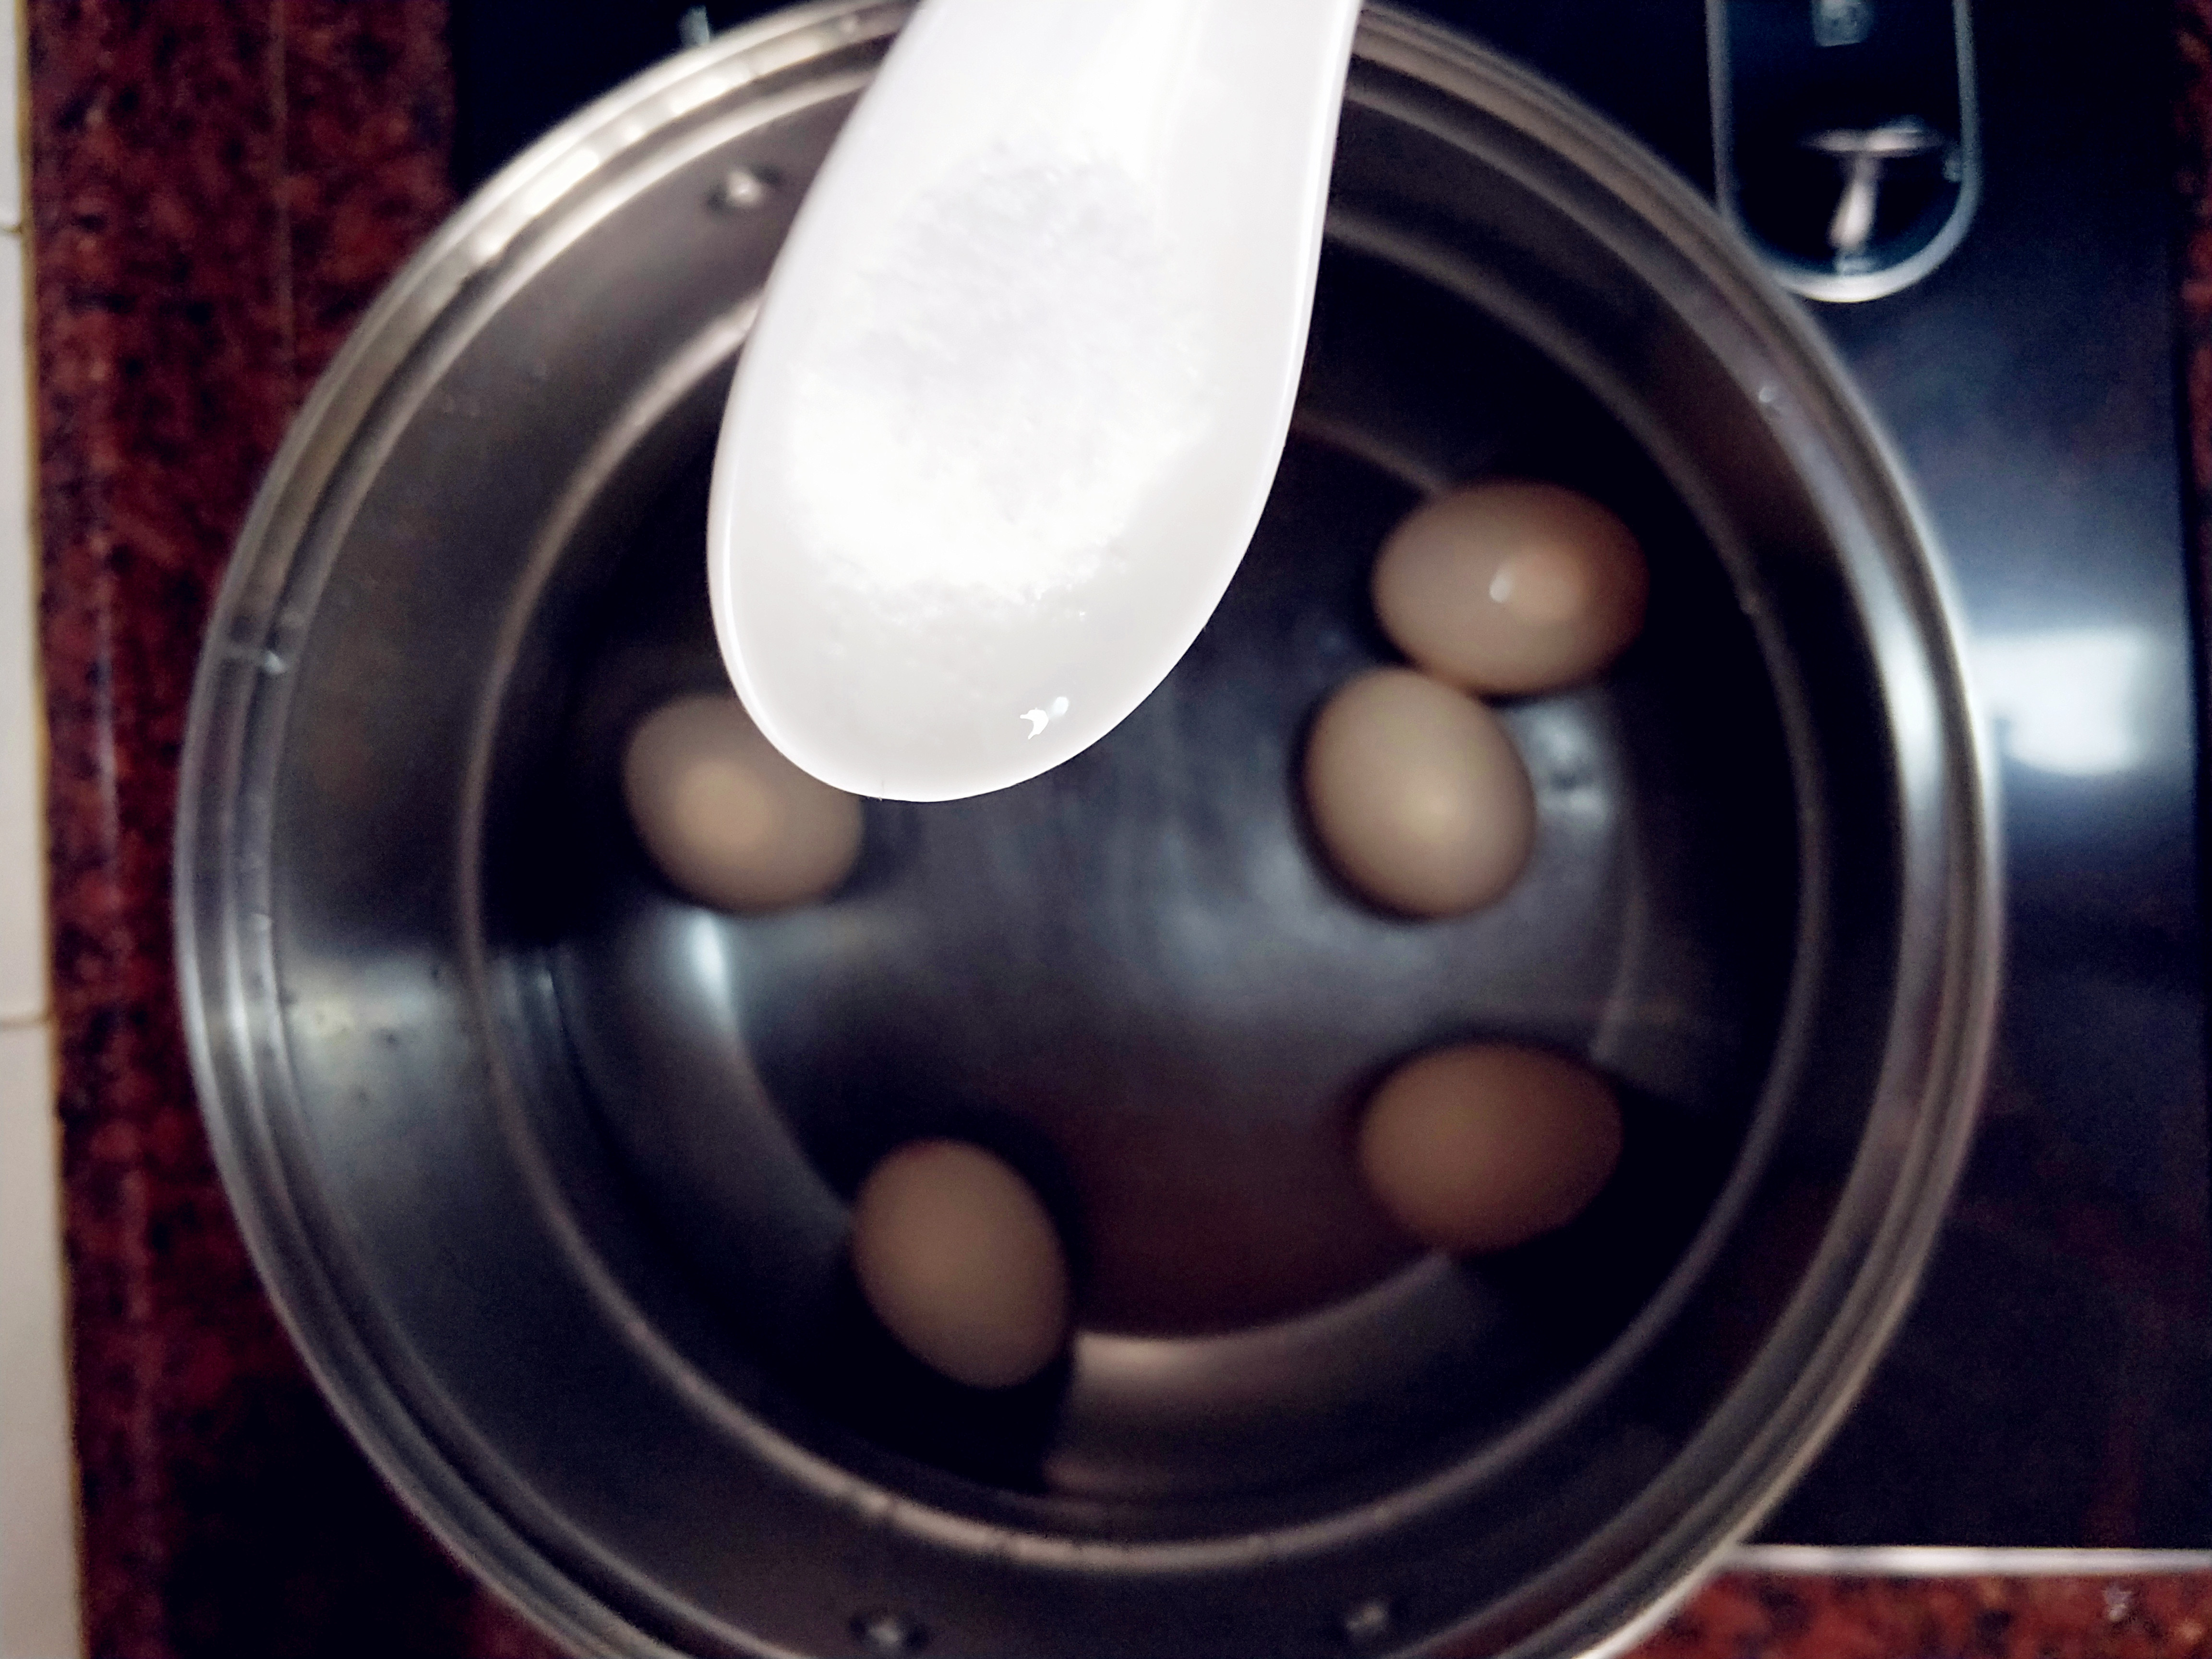 红糖荷包蛋怎么做_红糖荷包蛋的做法_豆果美食